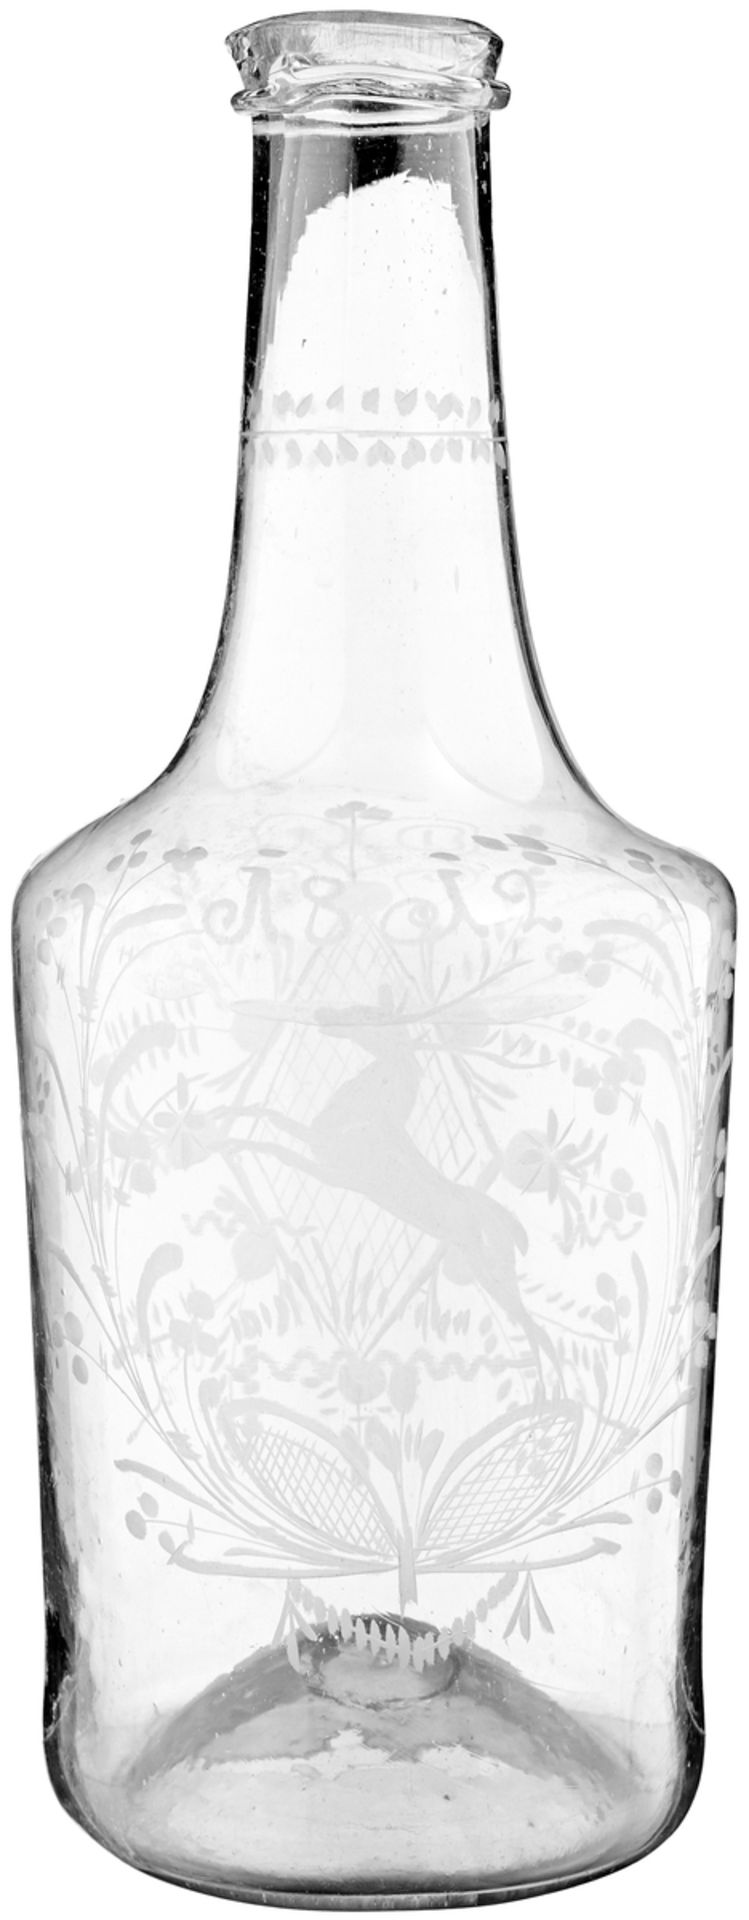 MassflascheWohl Flühli, datiert 1812. Farbloses, dünnwandig geblasenes Glas mit eingestochenem